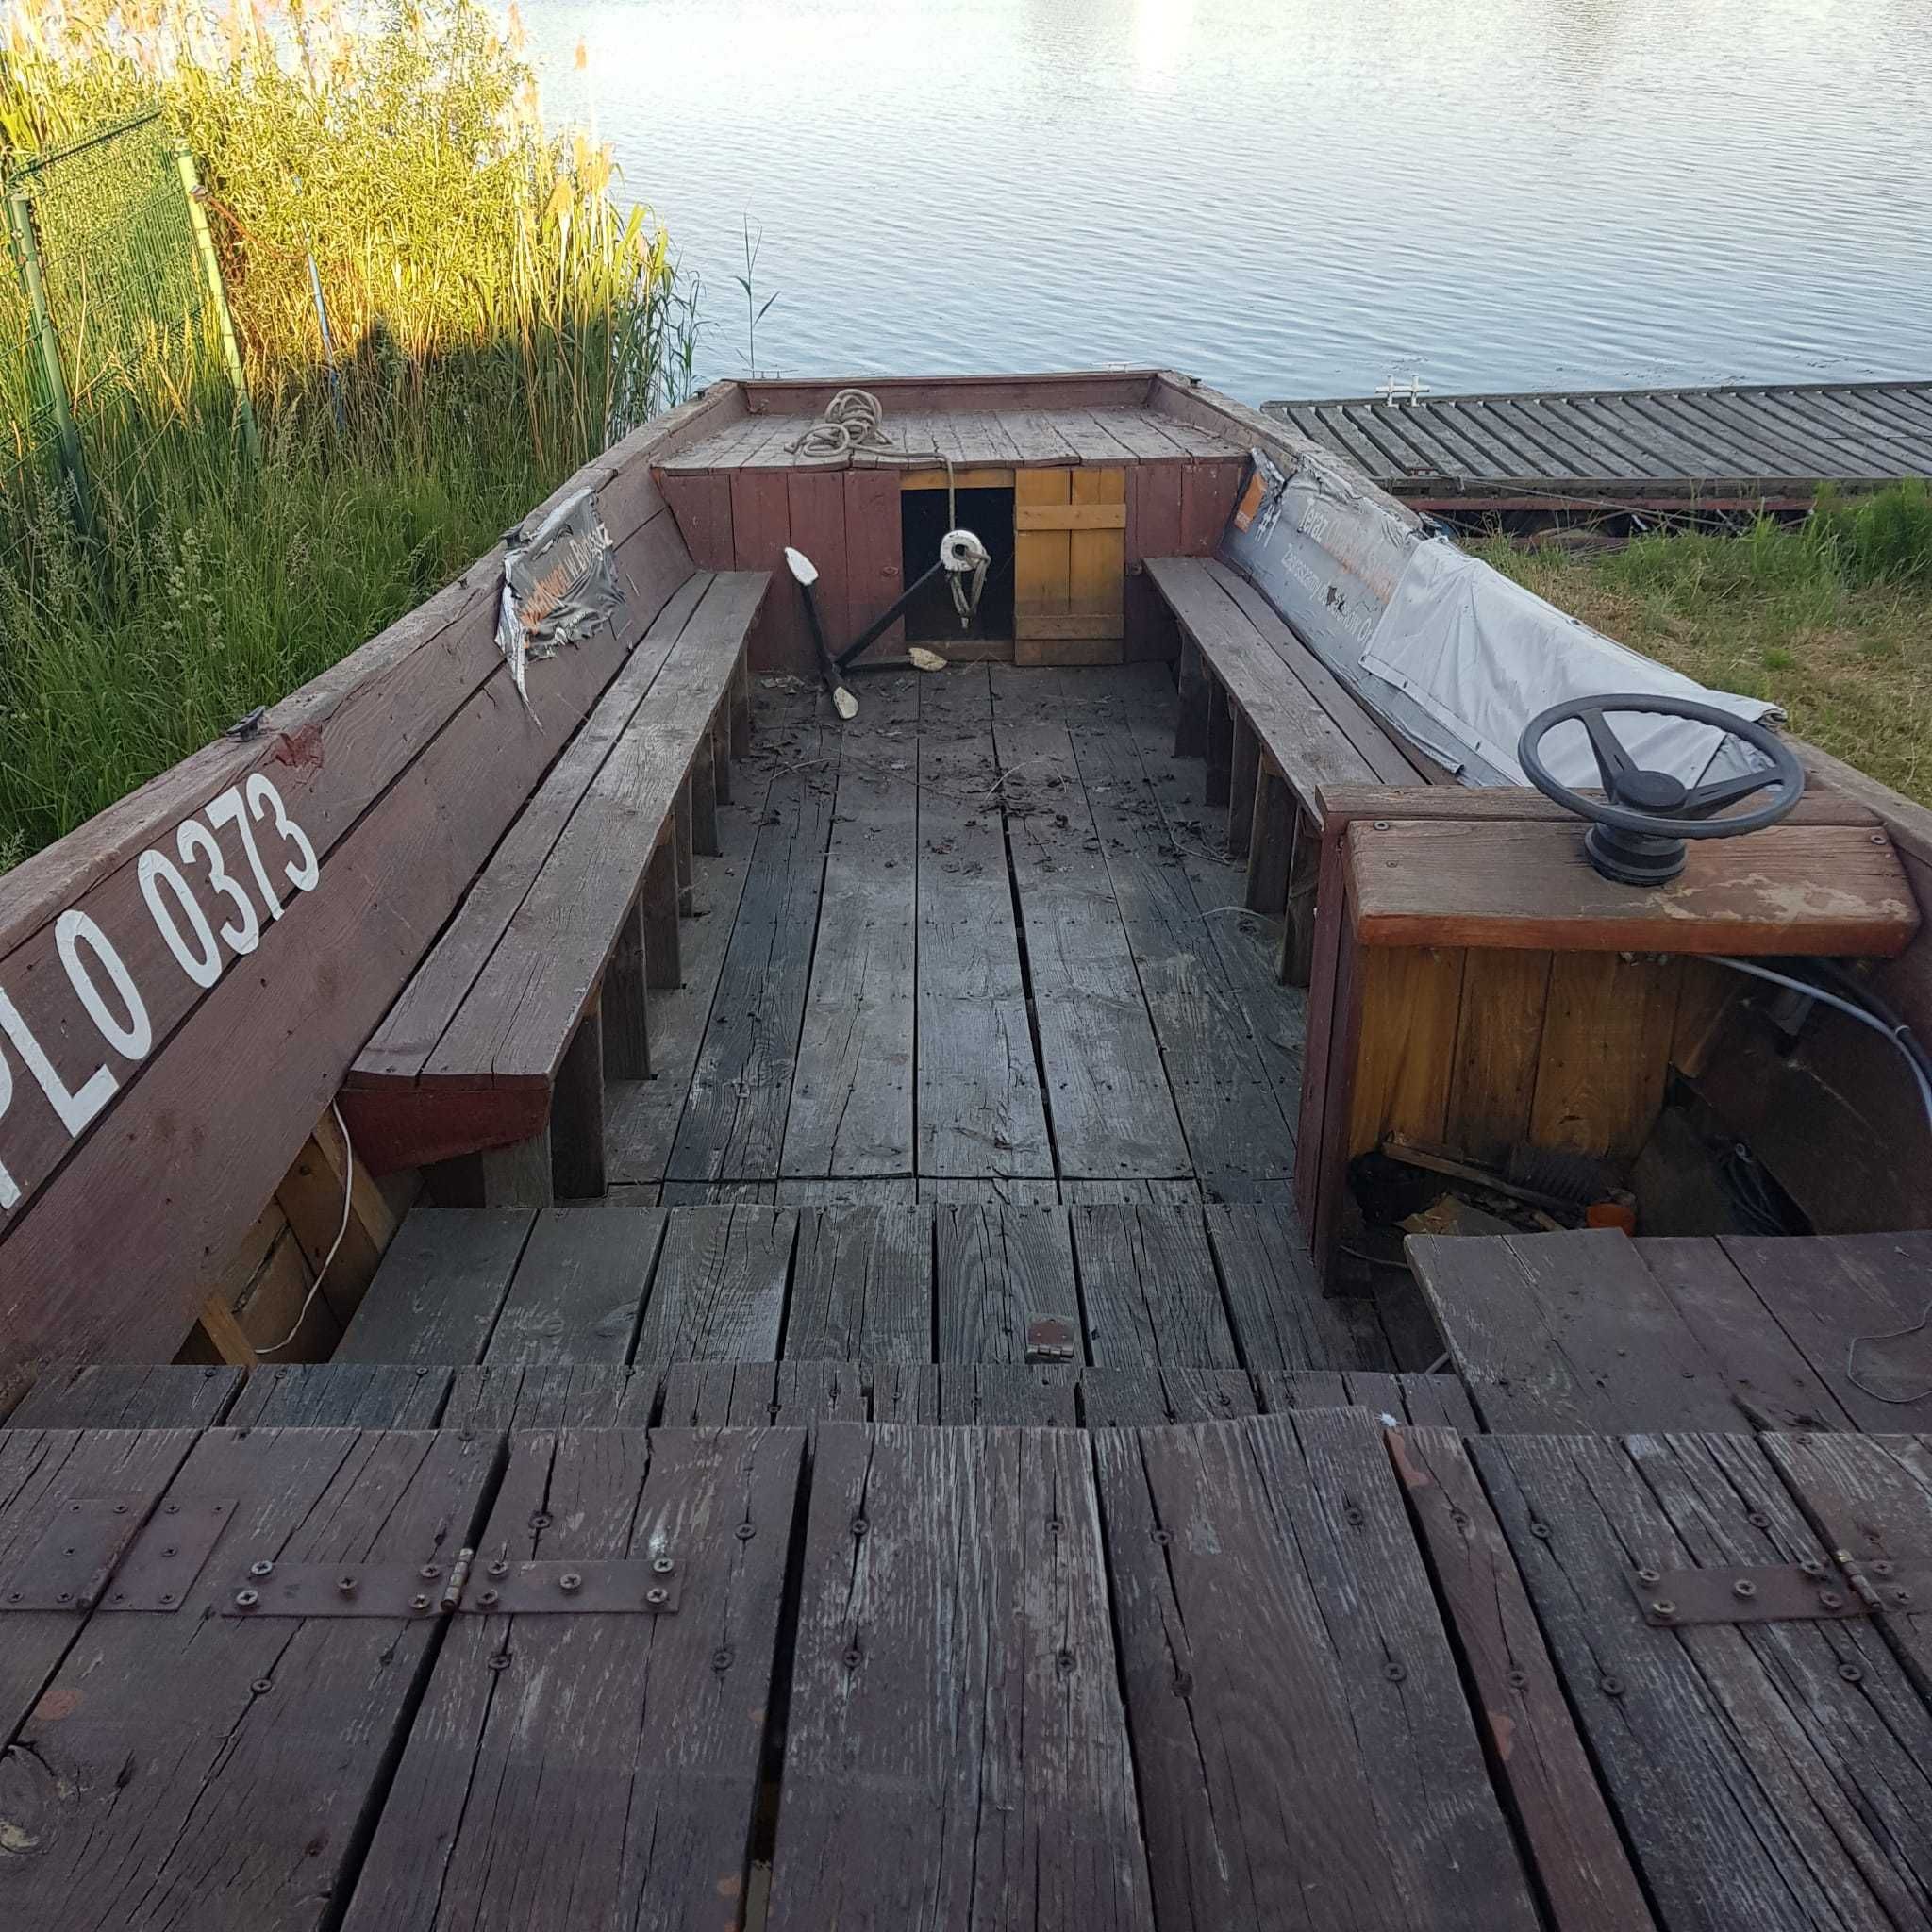 dobra CENA; łódz płaskodenna gallera drewniana-zadzwoń dogadamy się